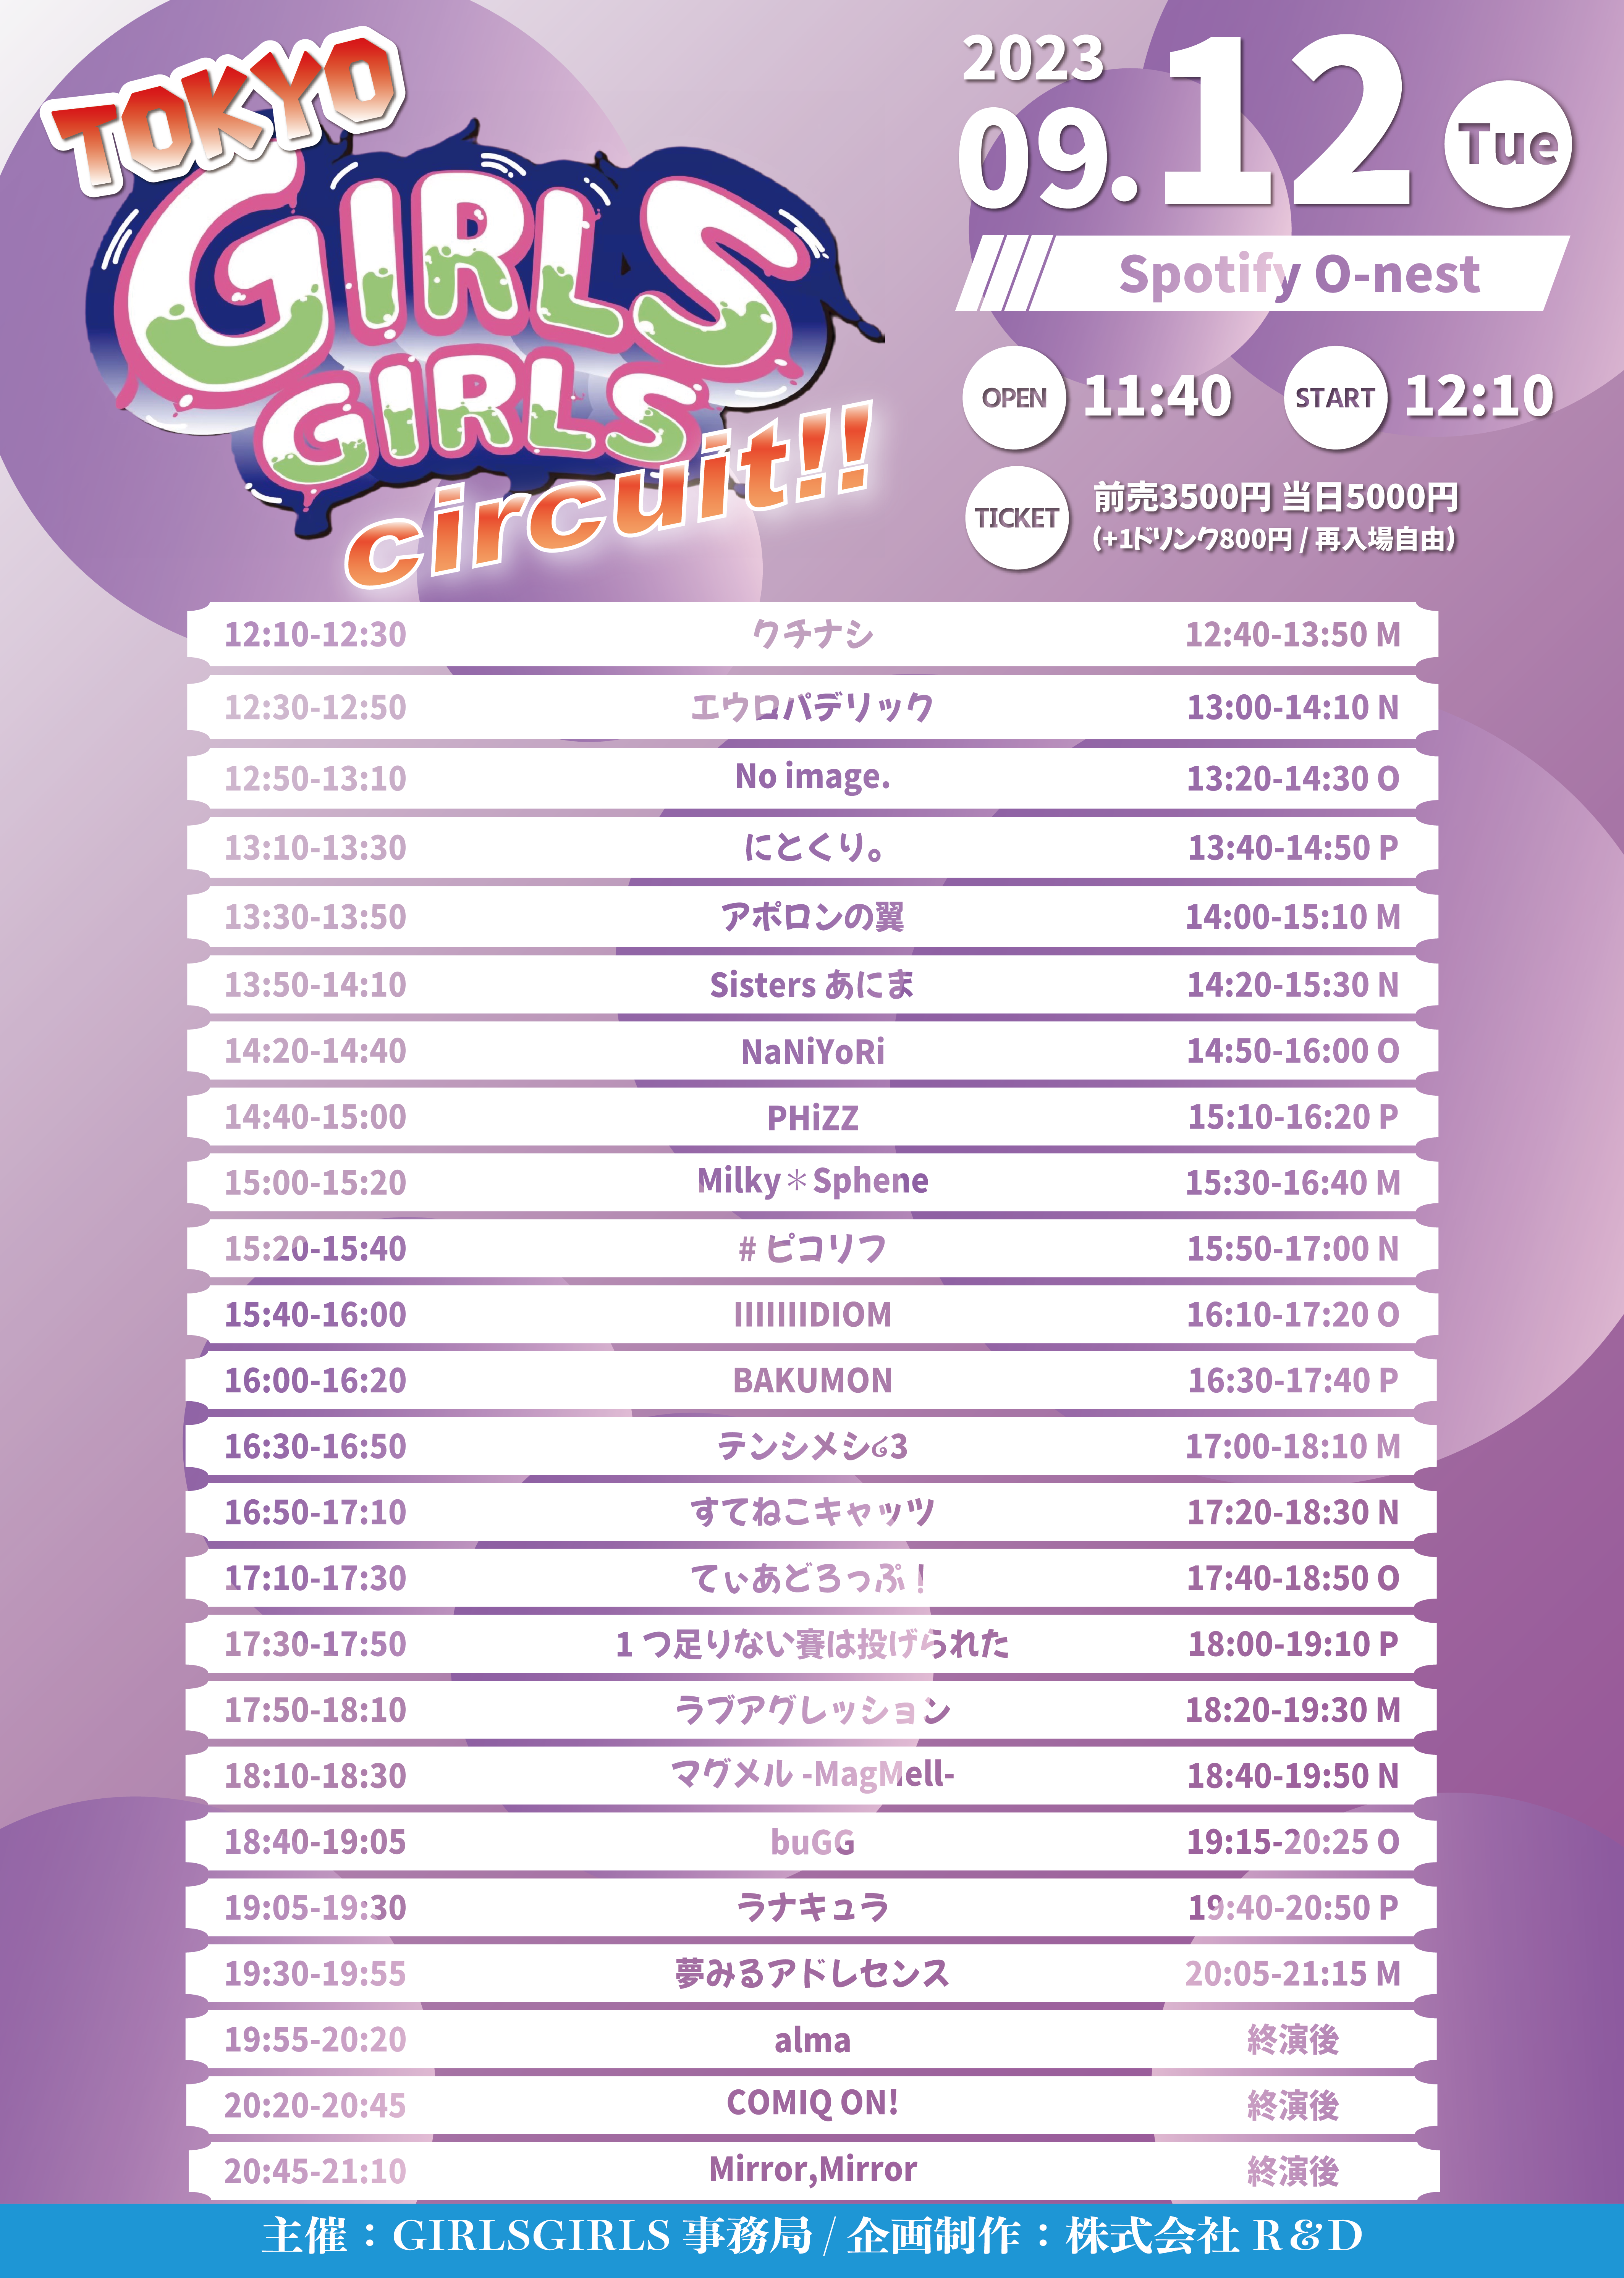 TOKYO GIRLS GIRLS circuit!!